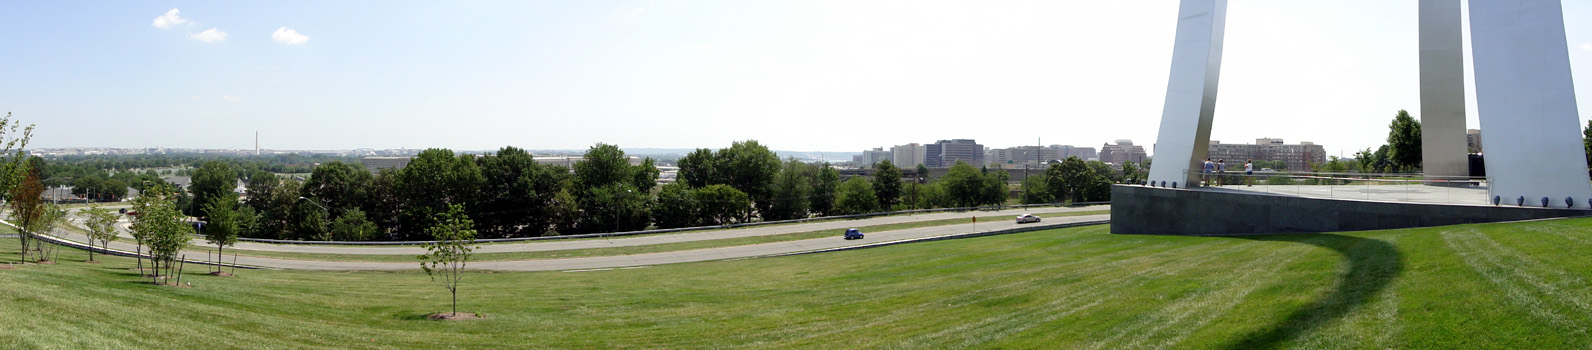 View of Washinton